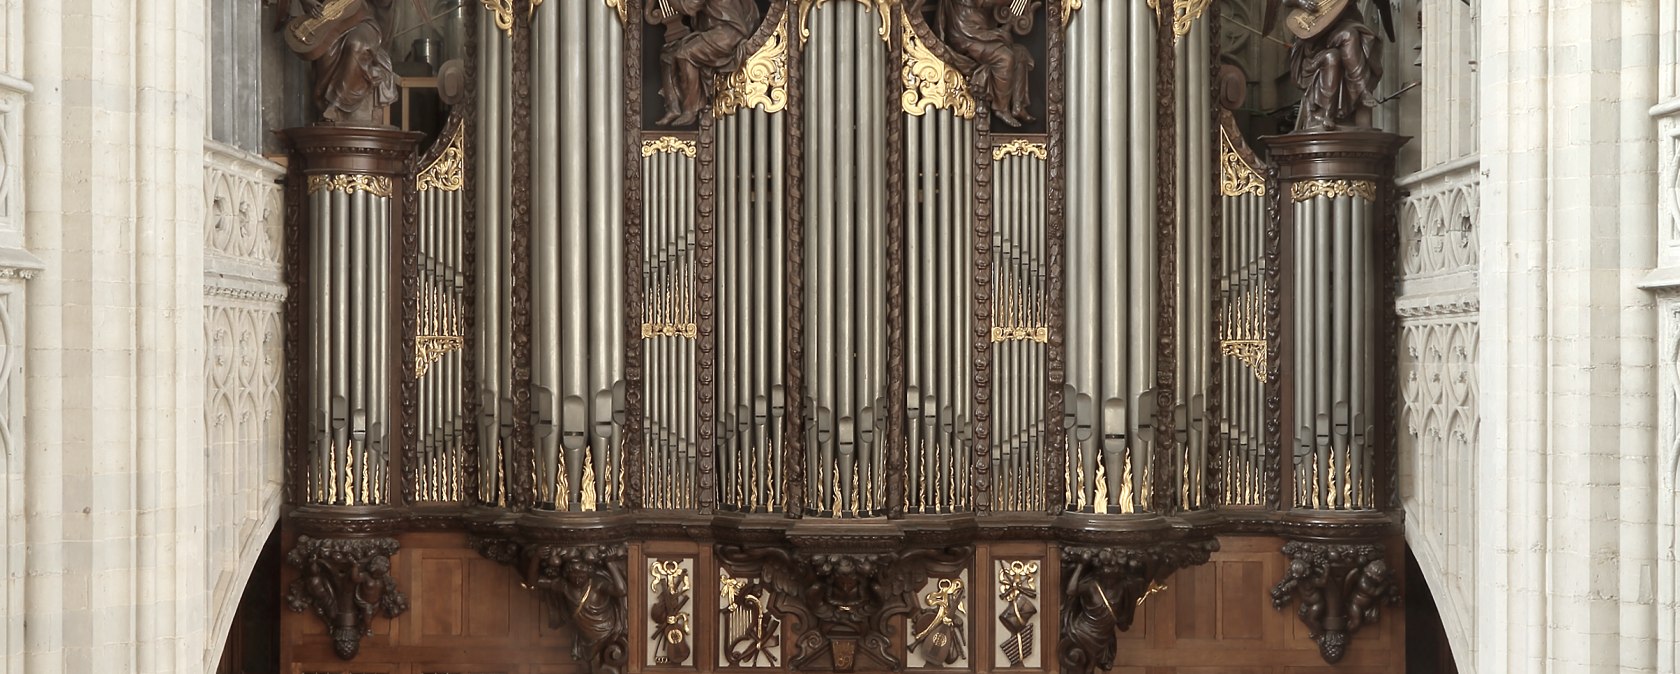 Die Orgel in der Kathedrale in Antwerpen, © Orgelbau Schumacher